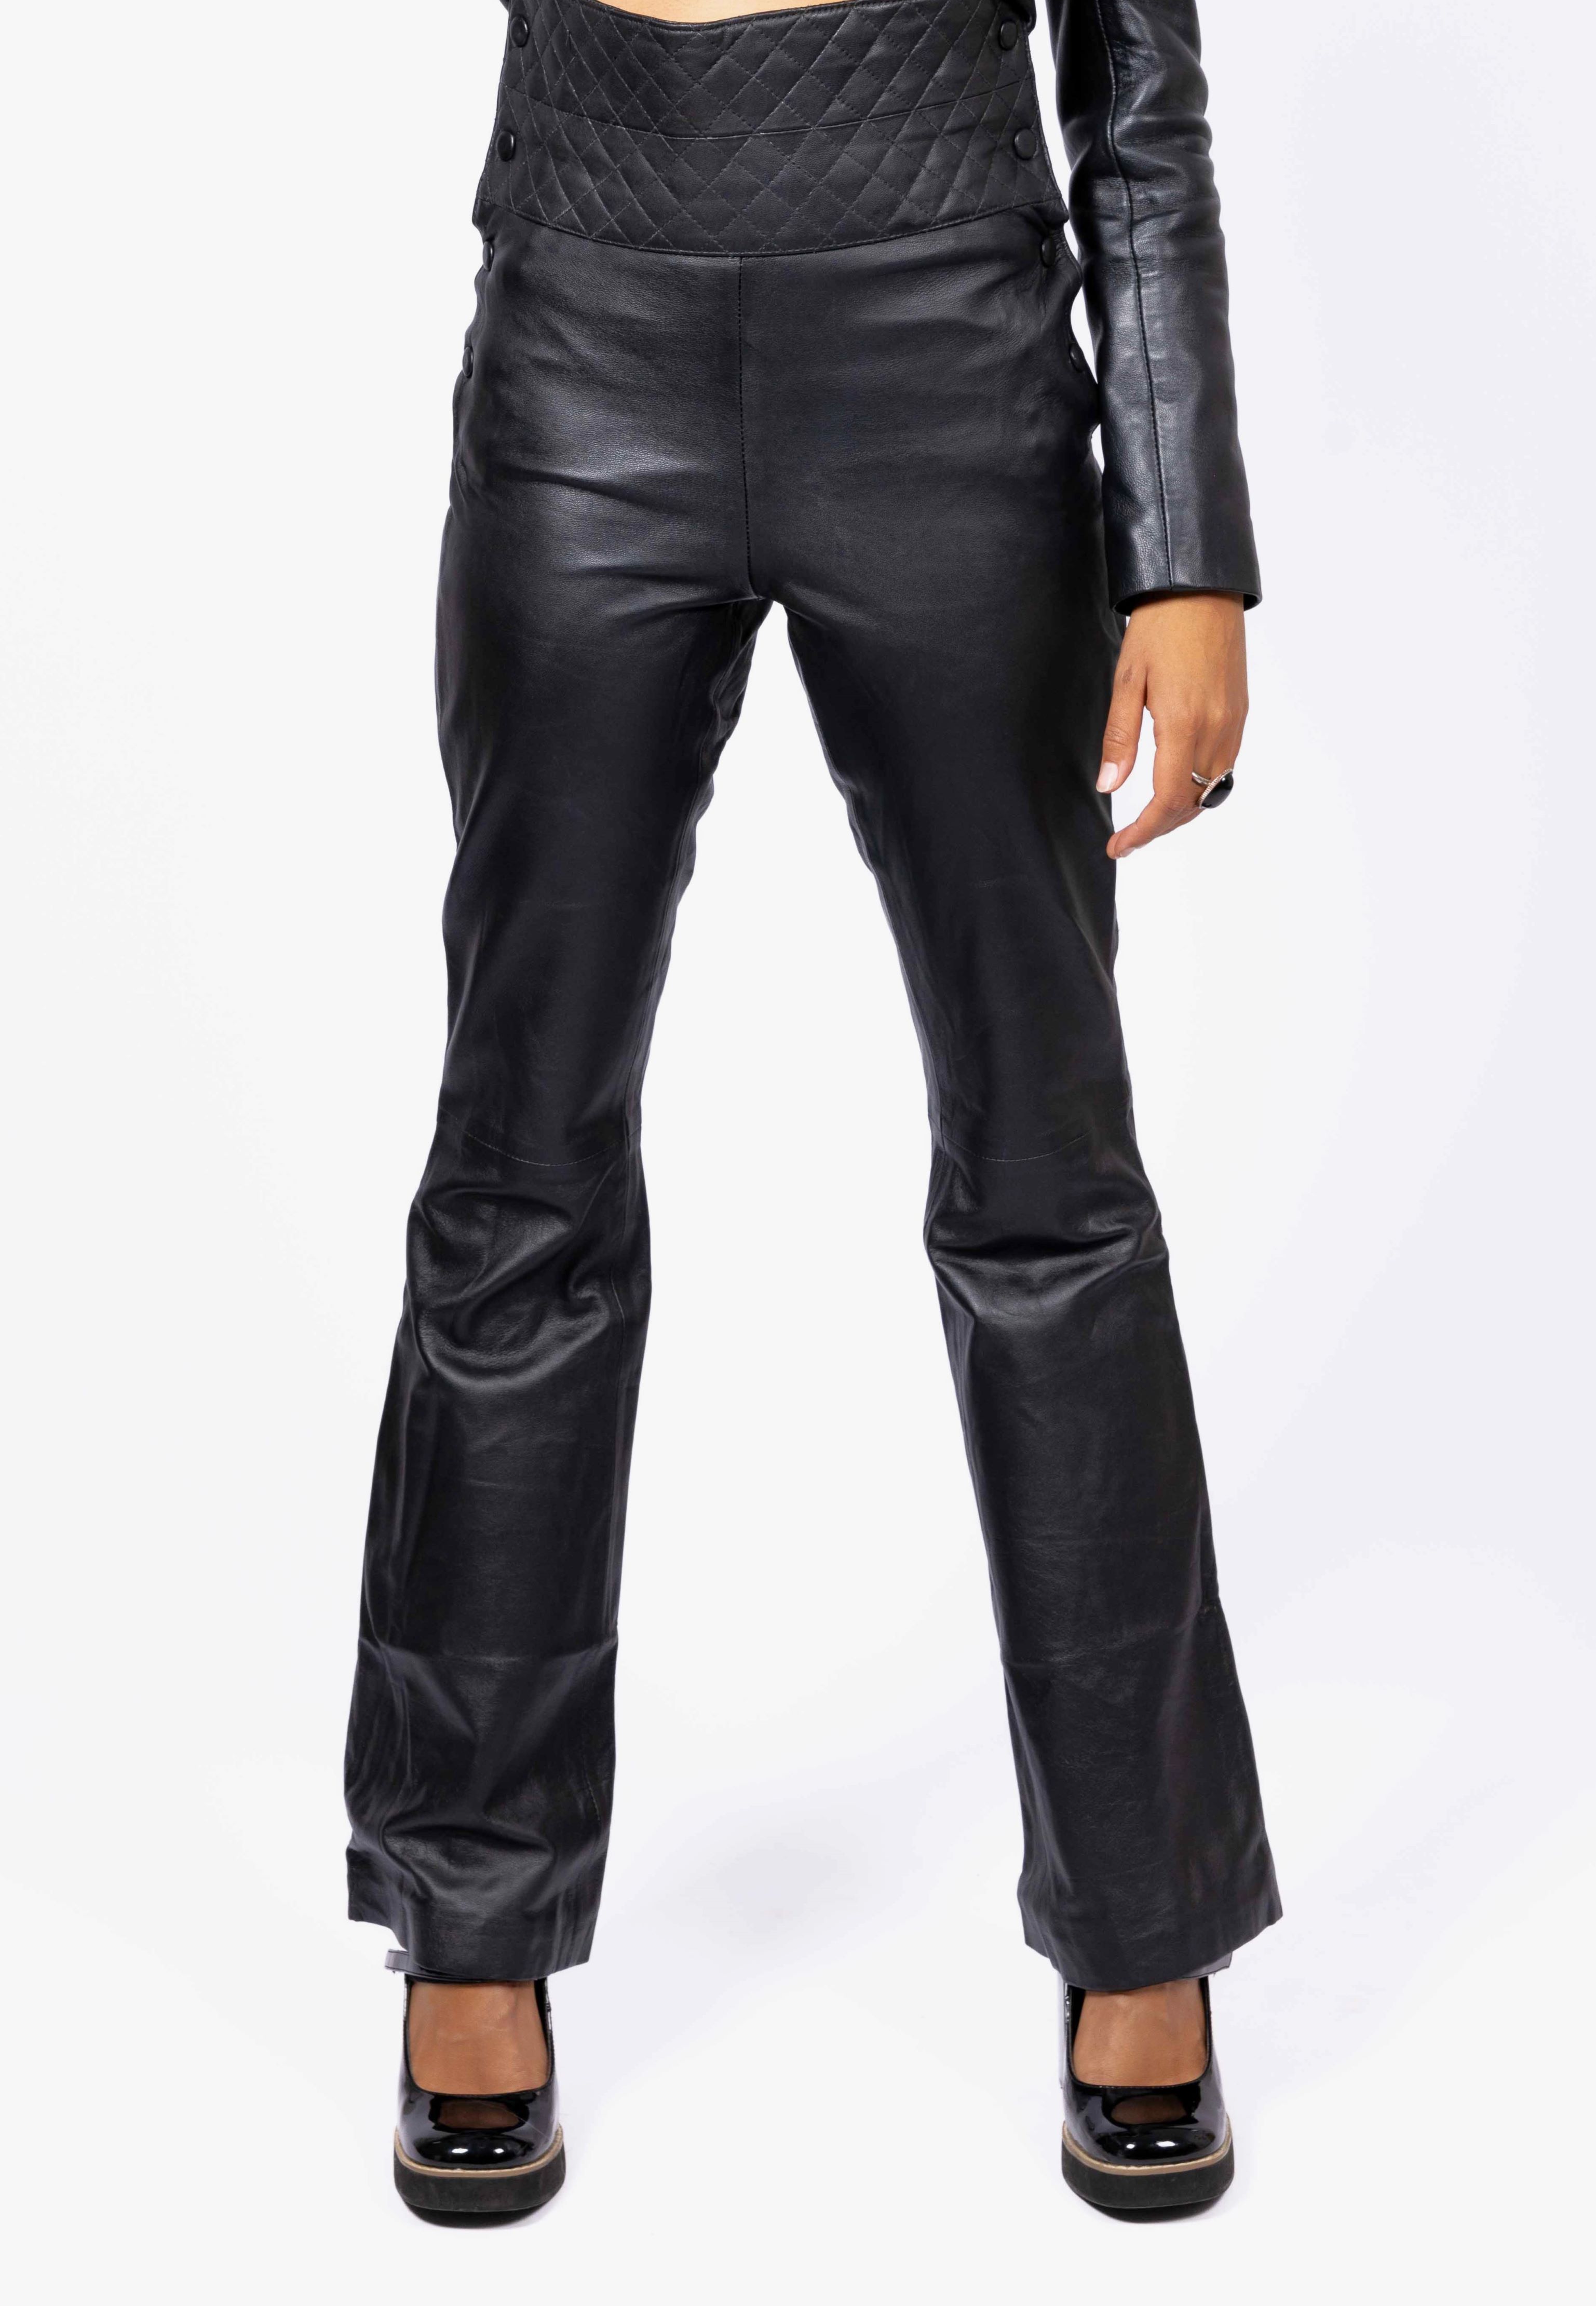 Pantalón de piel de piel REAL -alto de cintura- en color negro